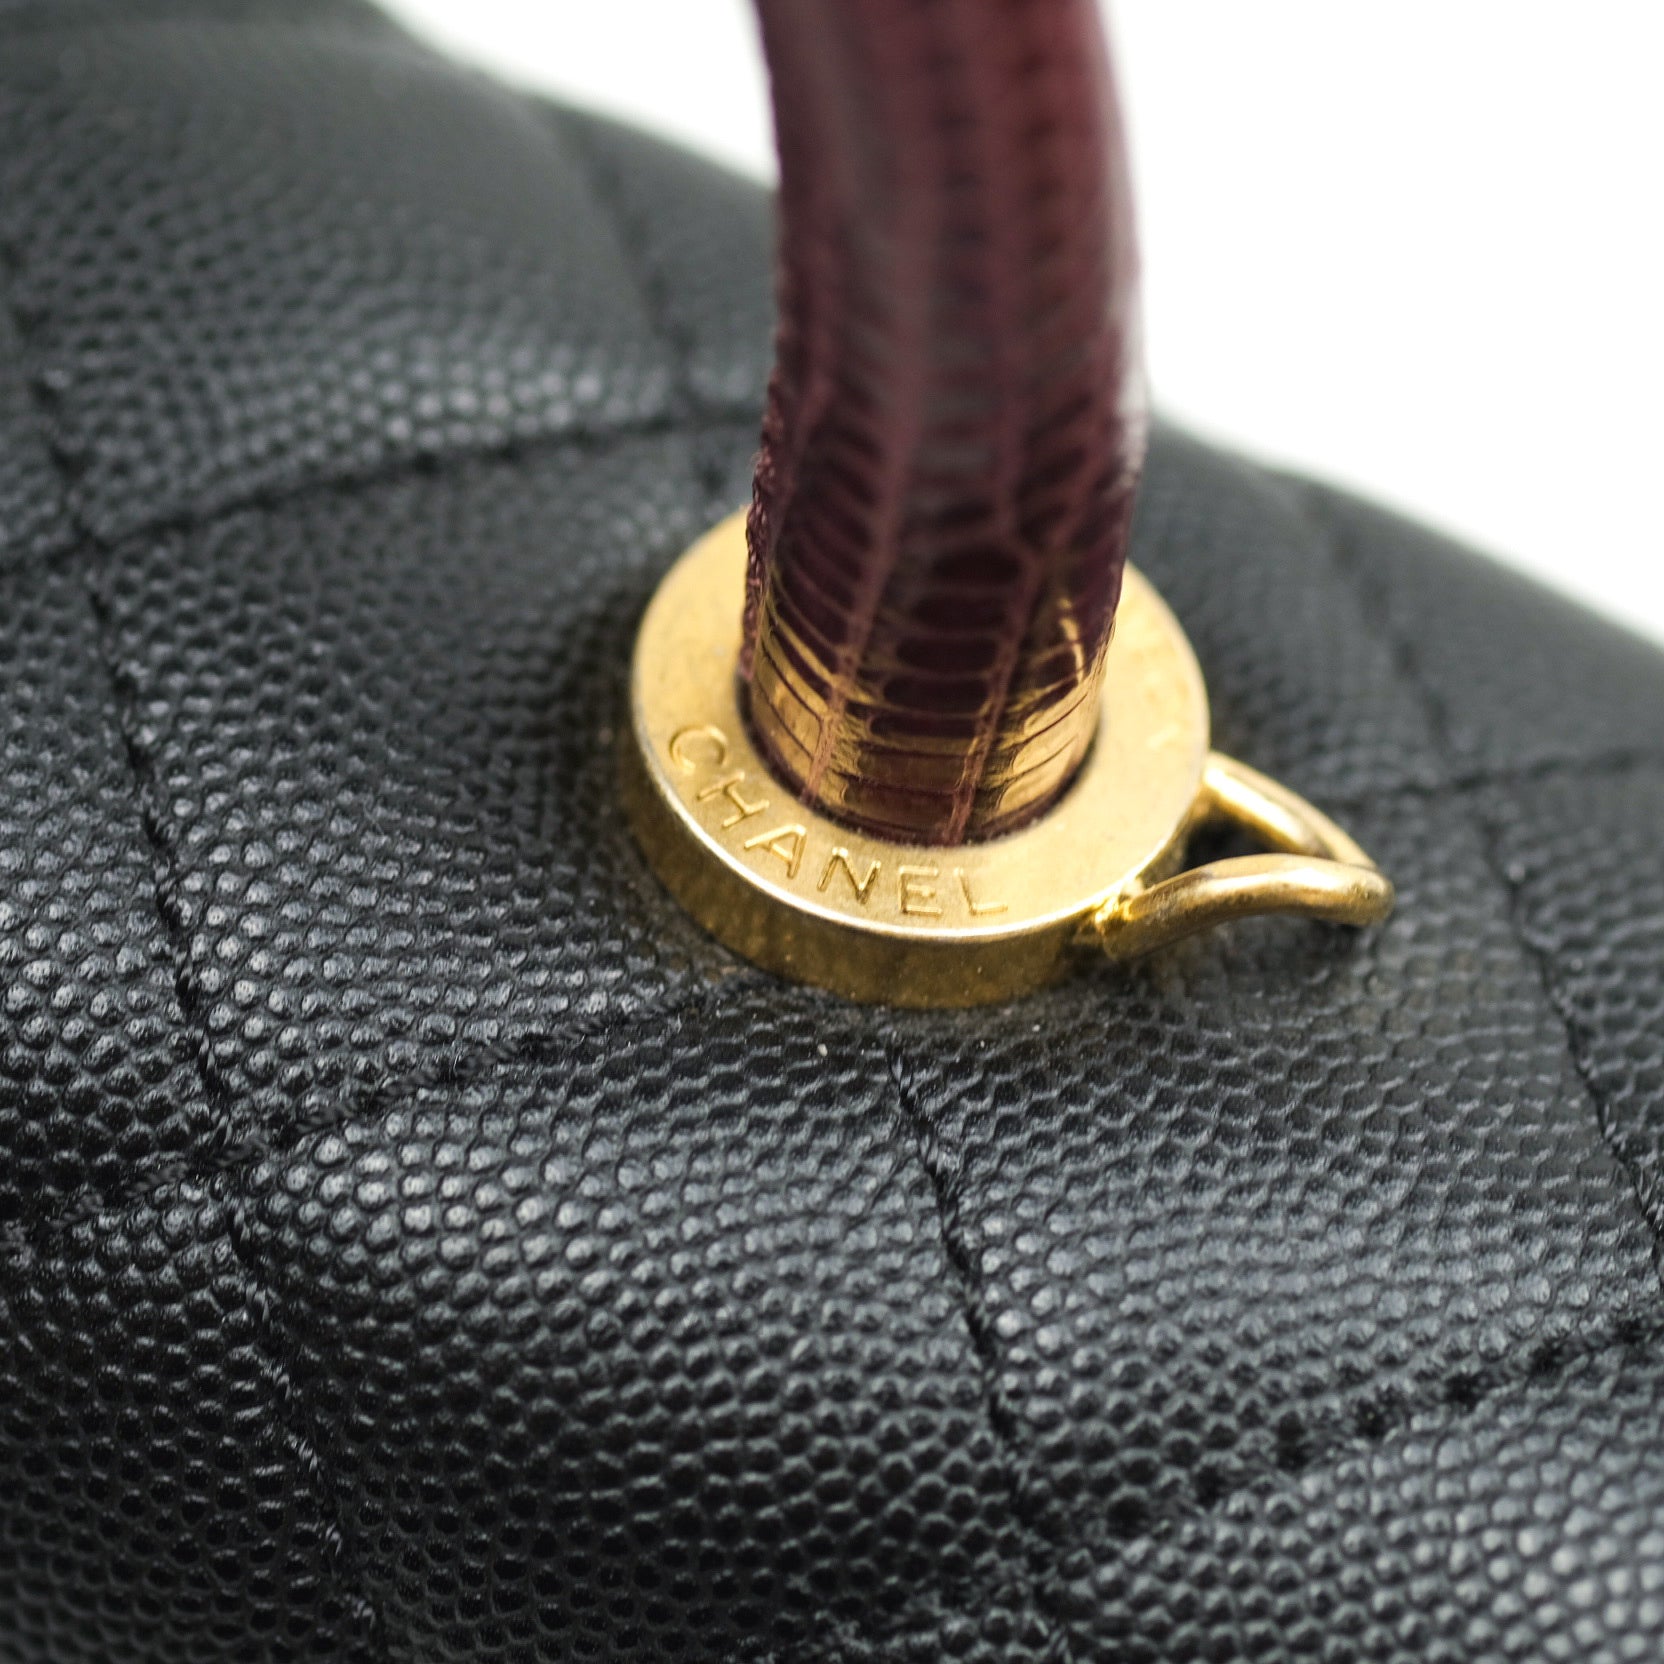 Coco handle bag small Caviar Black – Kluxq